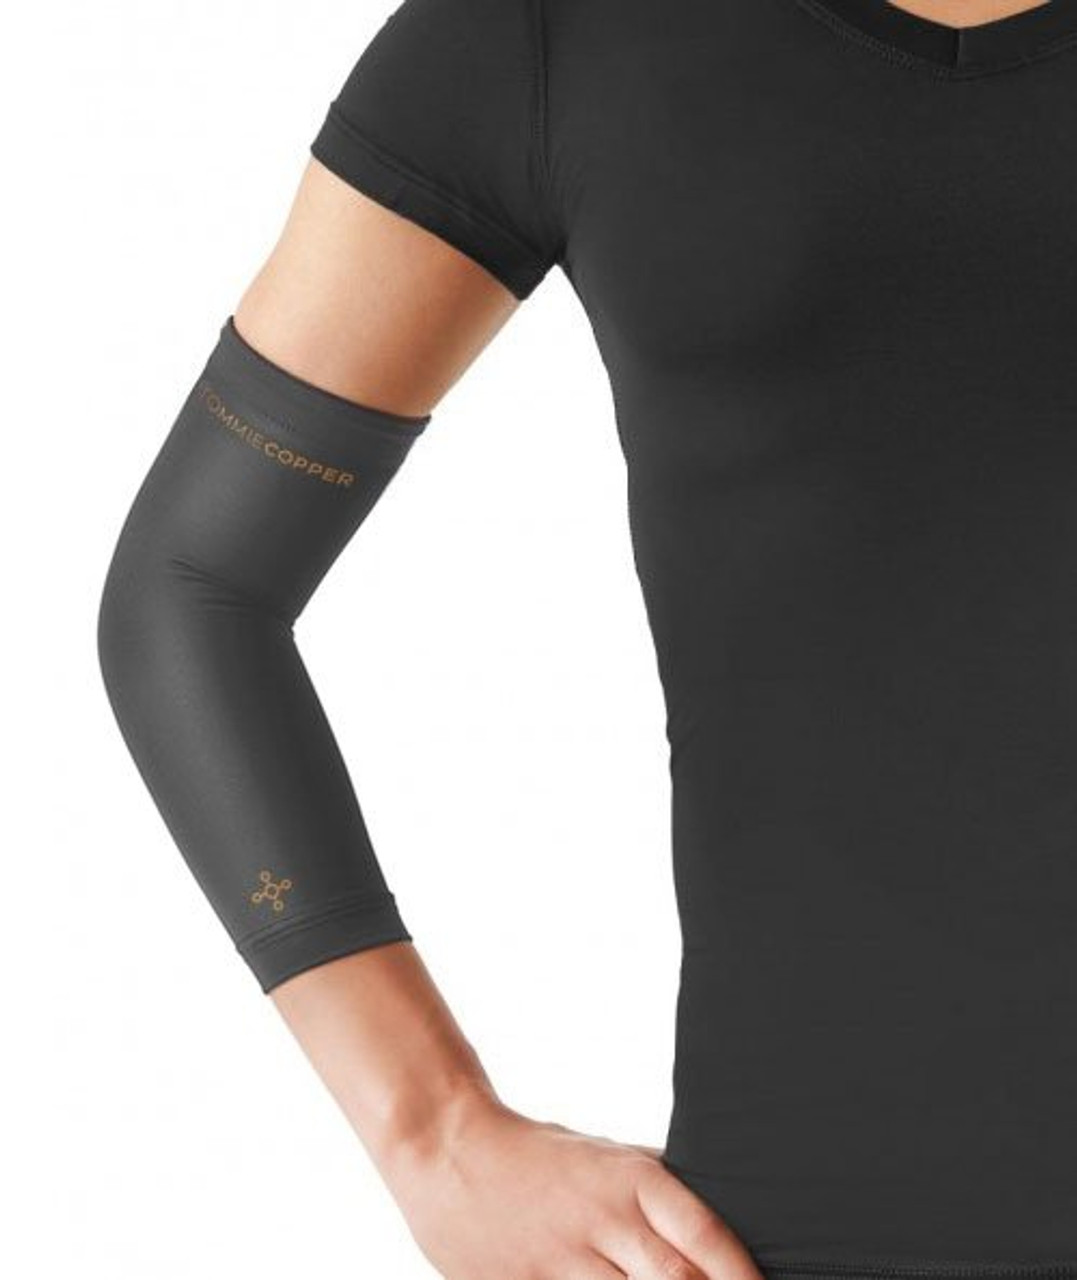 Copper Arm Sleeve | Black | Unisex | Small | Copper Compression